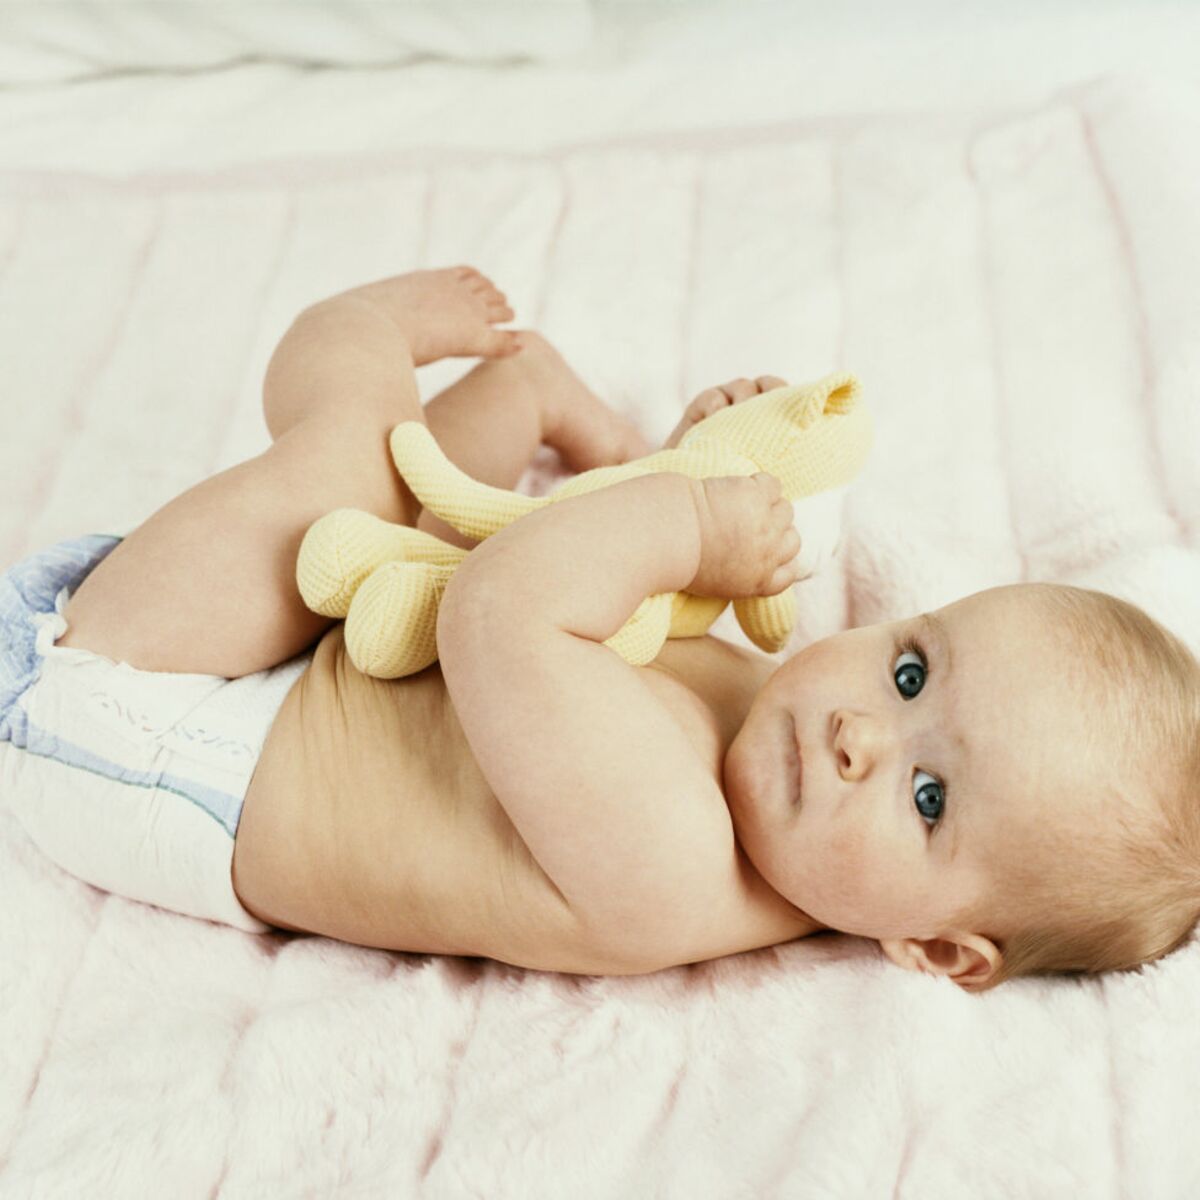 Bébé a 2 mois : ce qu'il faut savoir sur son développement : Femme